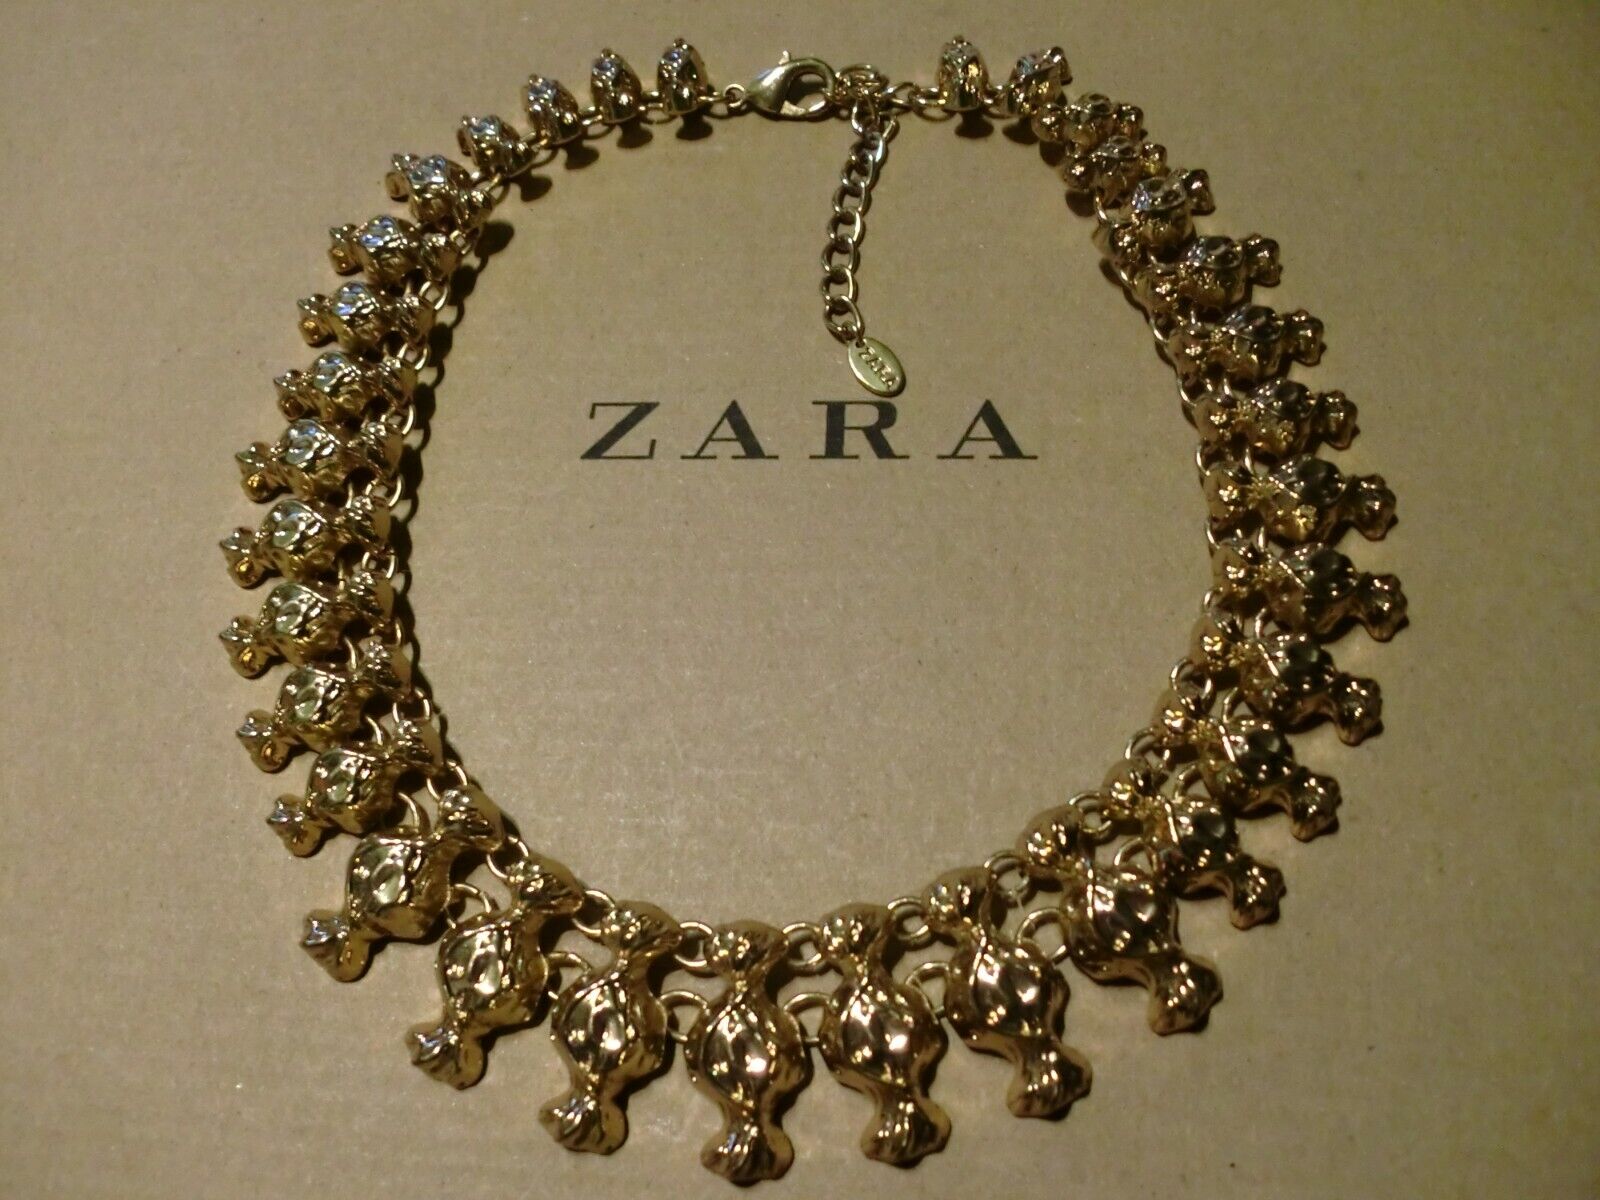 Zara mega statement Kette necklace boho top Blogger gold Collier edel selten